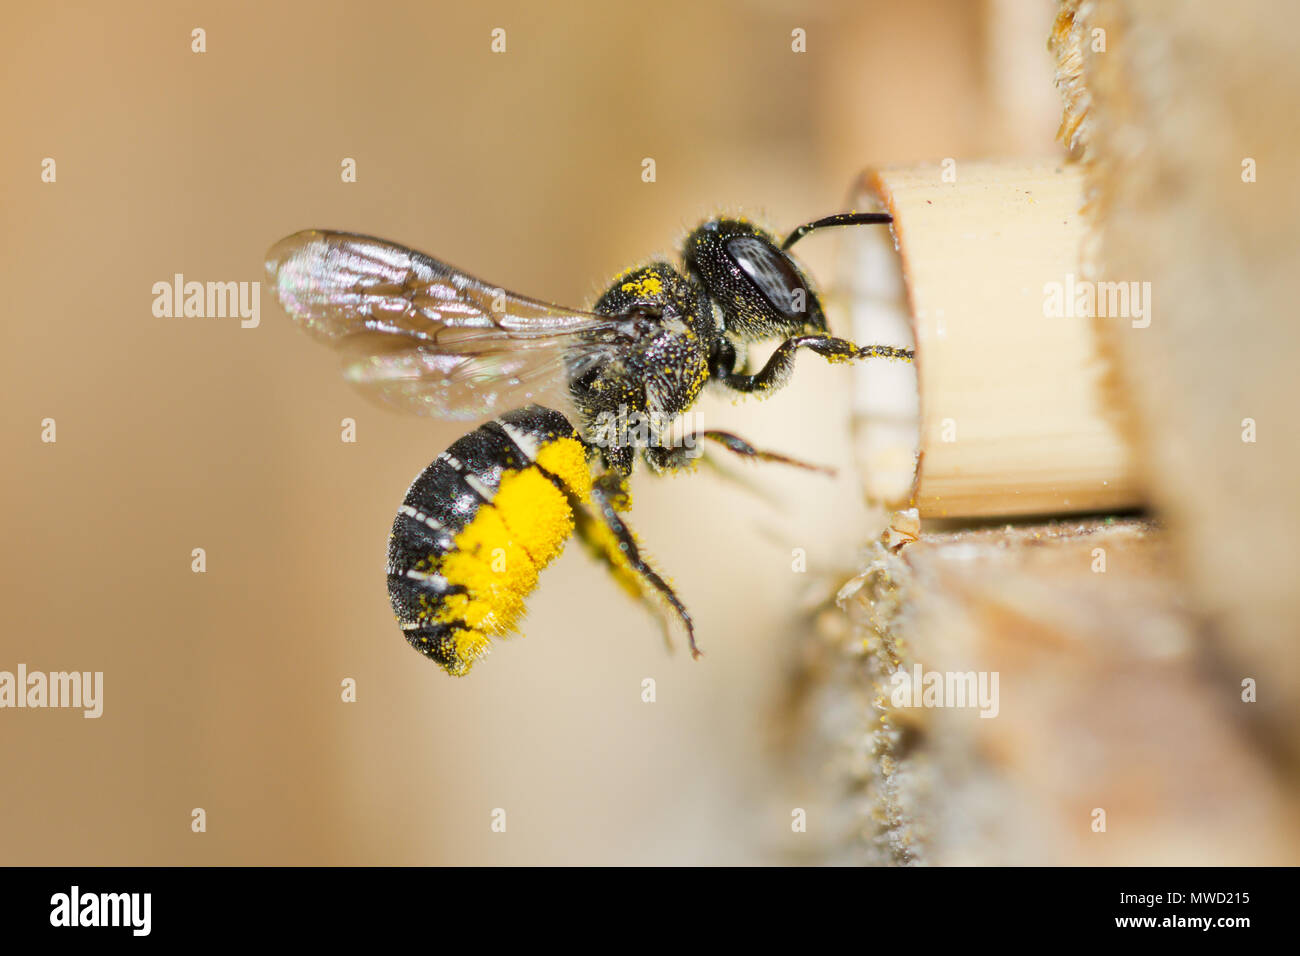 Femmina resina solitaria ape (Heriades crenulatus) si avvicina un insetto hotel per portare il giallo il polline dei fiori aster per il suo nido in una cava levetta reed. Foto Stock